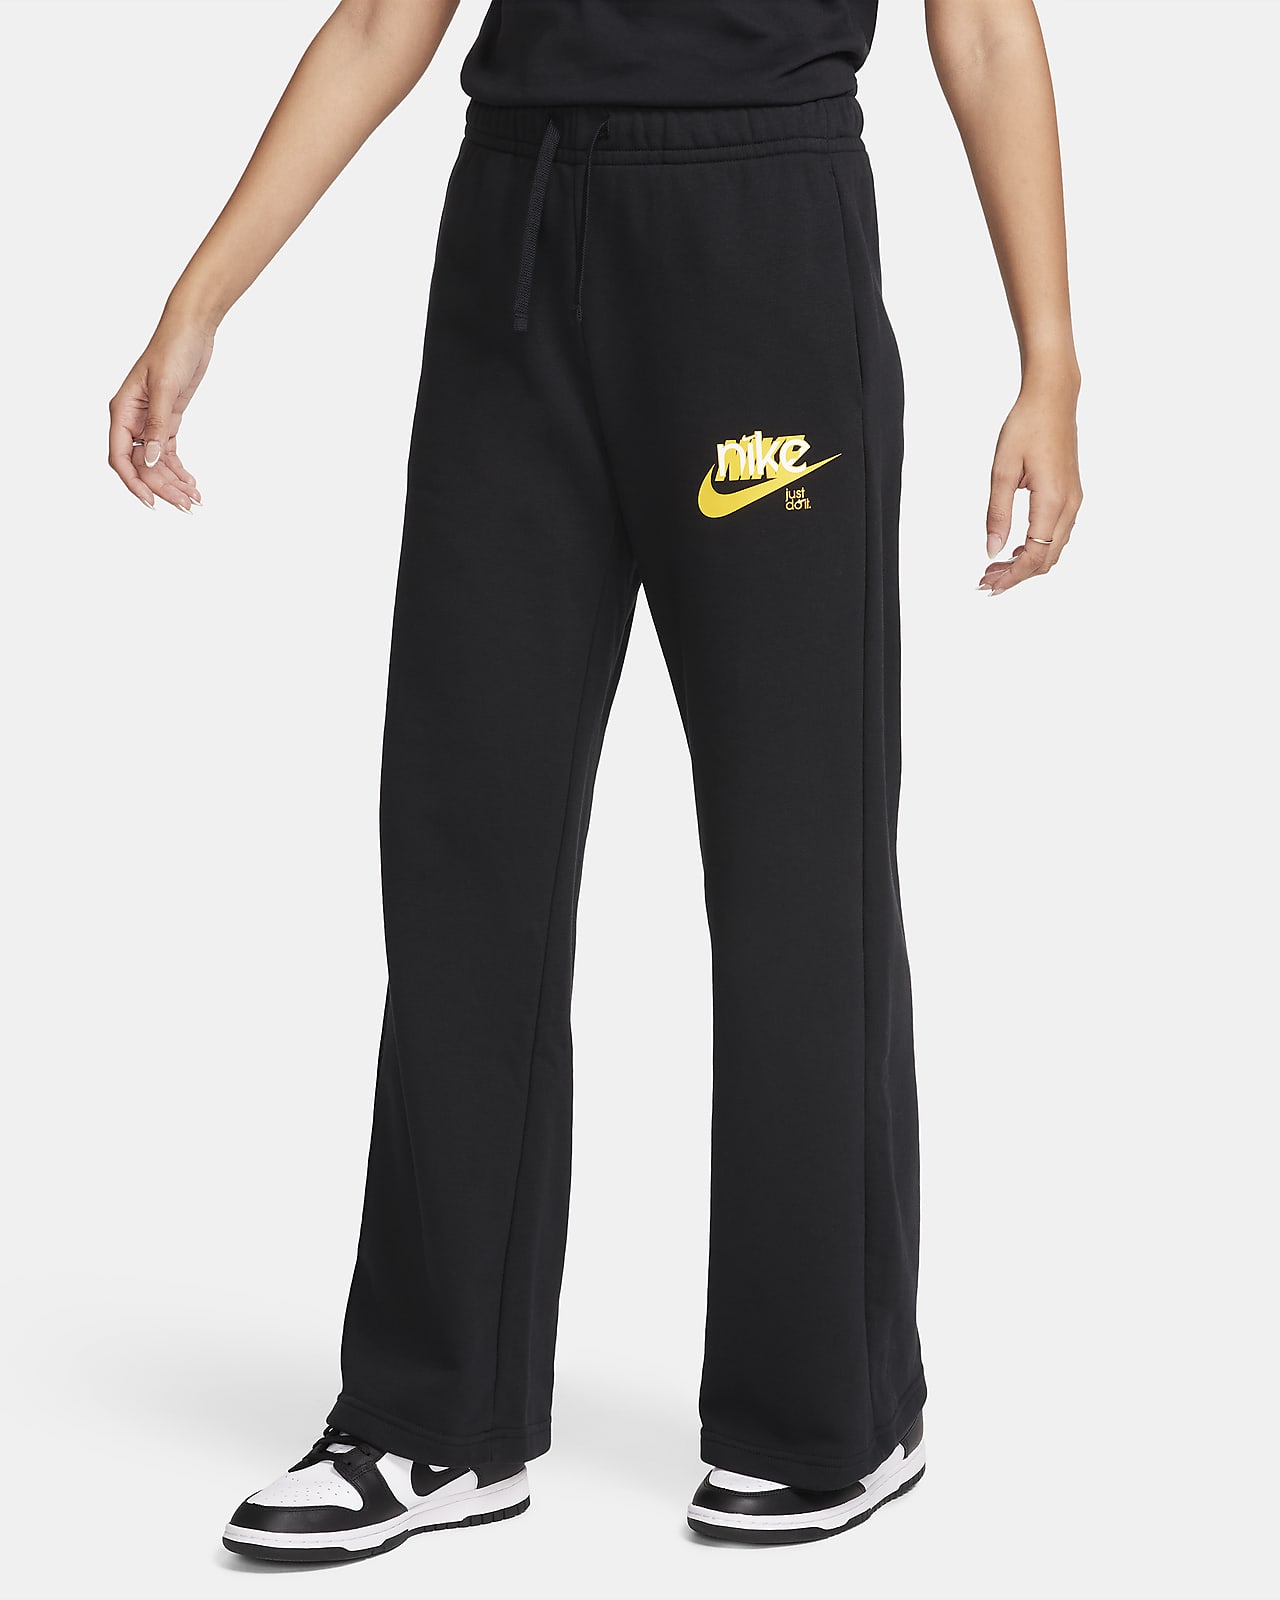 Pants de French Terry con gráfico de tiro medio de pierna ancha para mujer Nike Sportswear Club Fleece